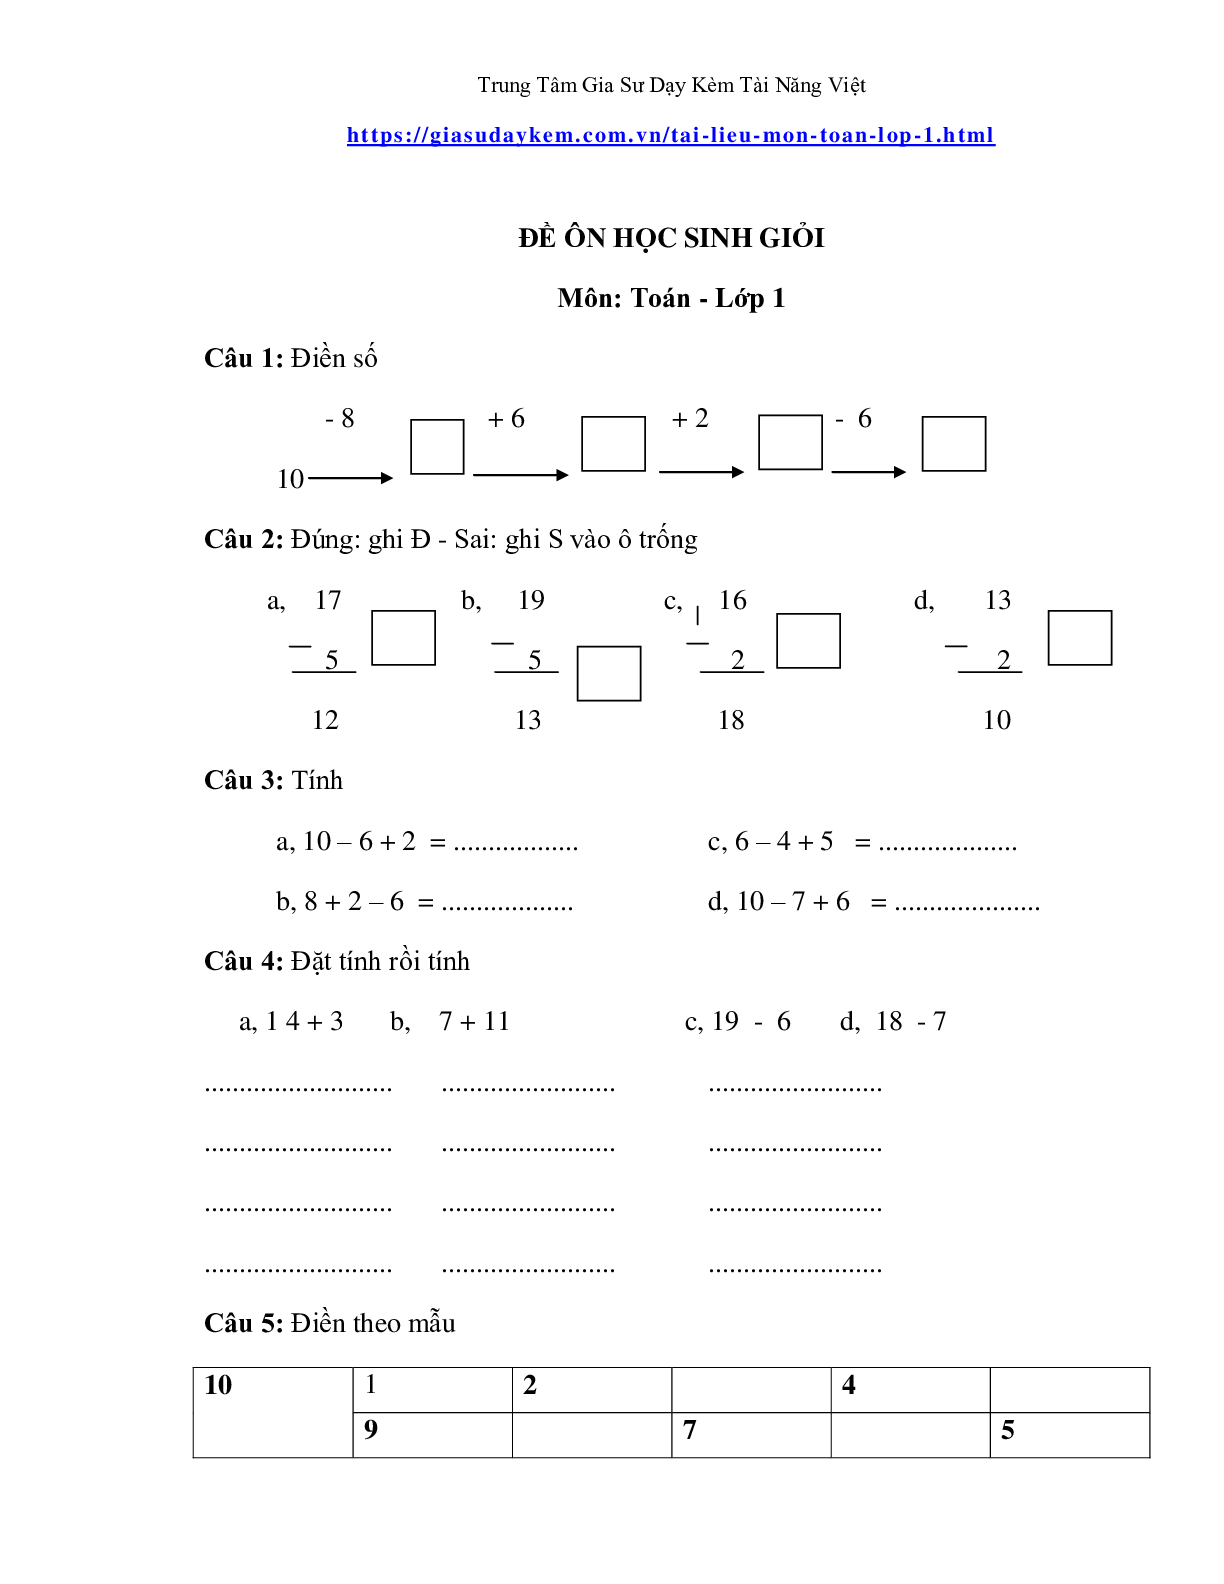 Đề thi toán lớp một nâng cao (trang 9)